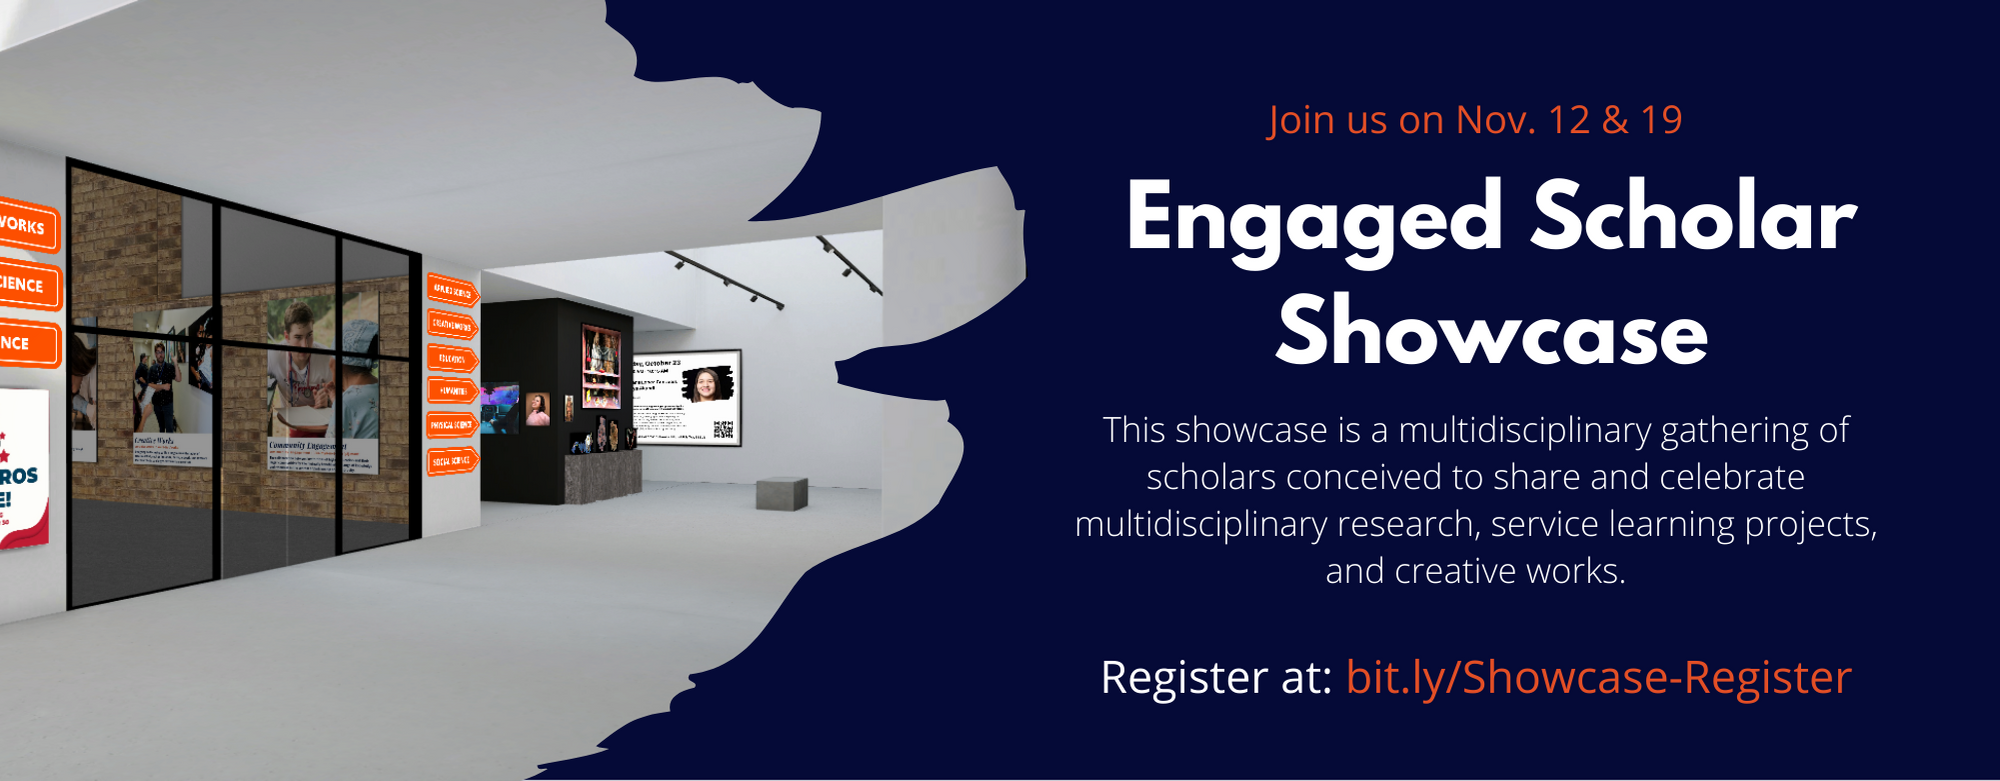 Engaged Scholar Showcase